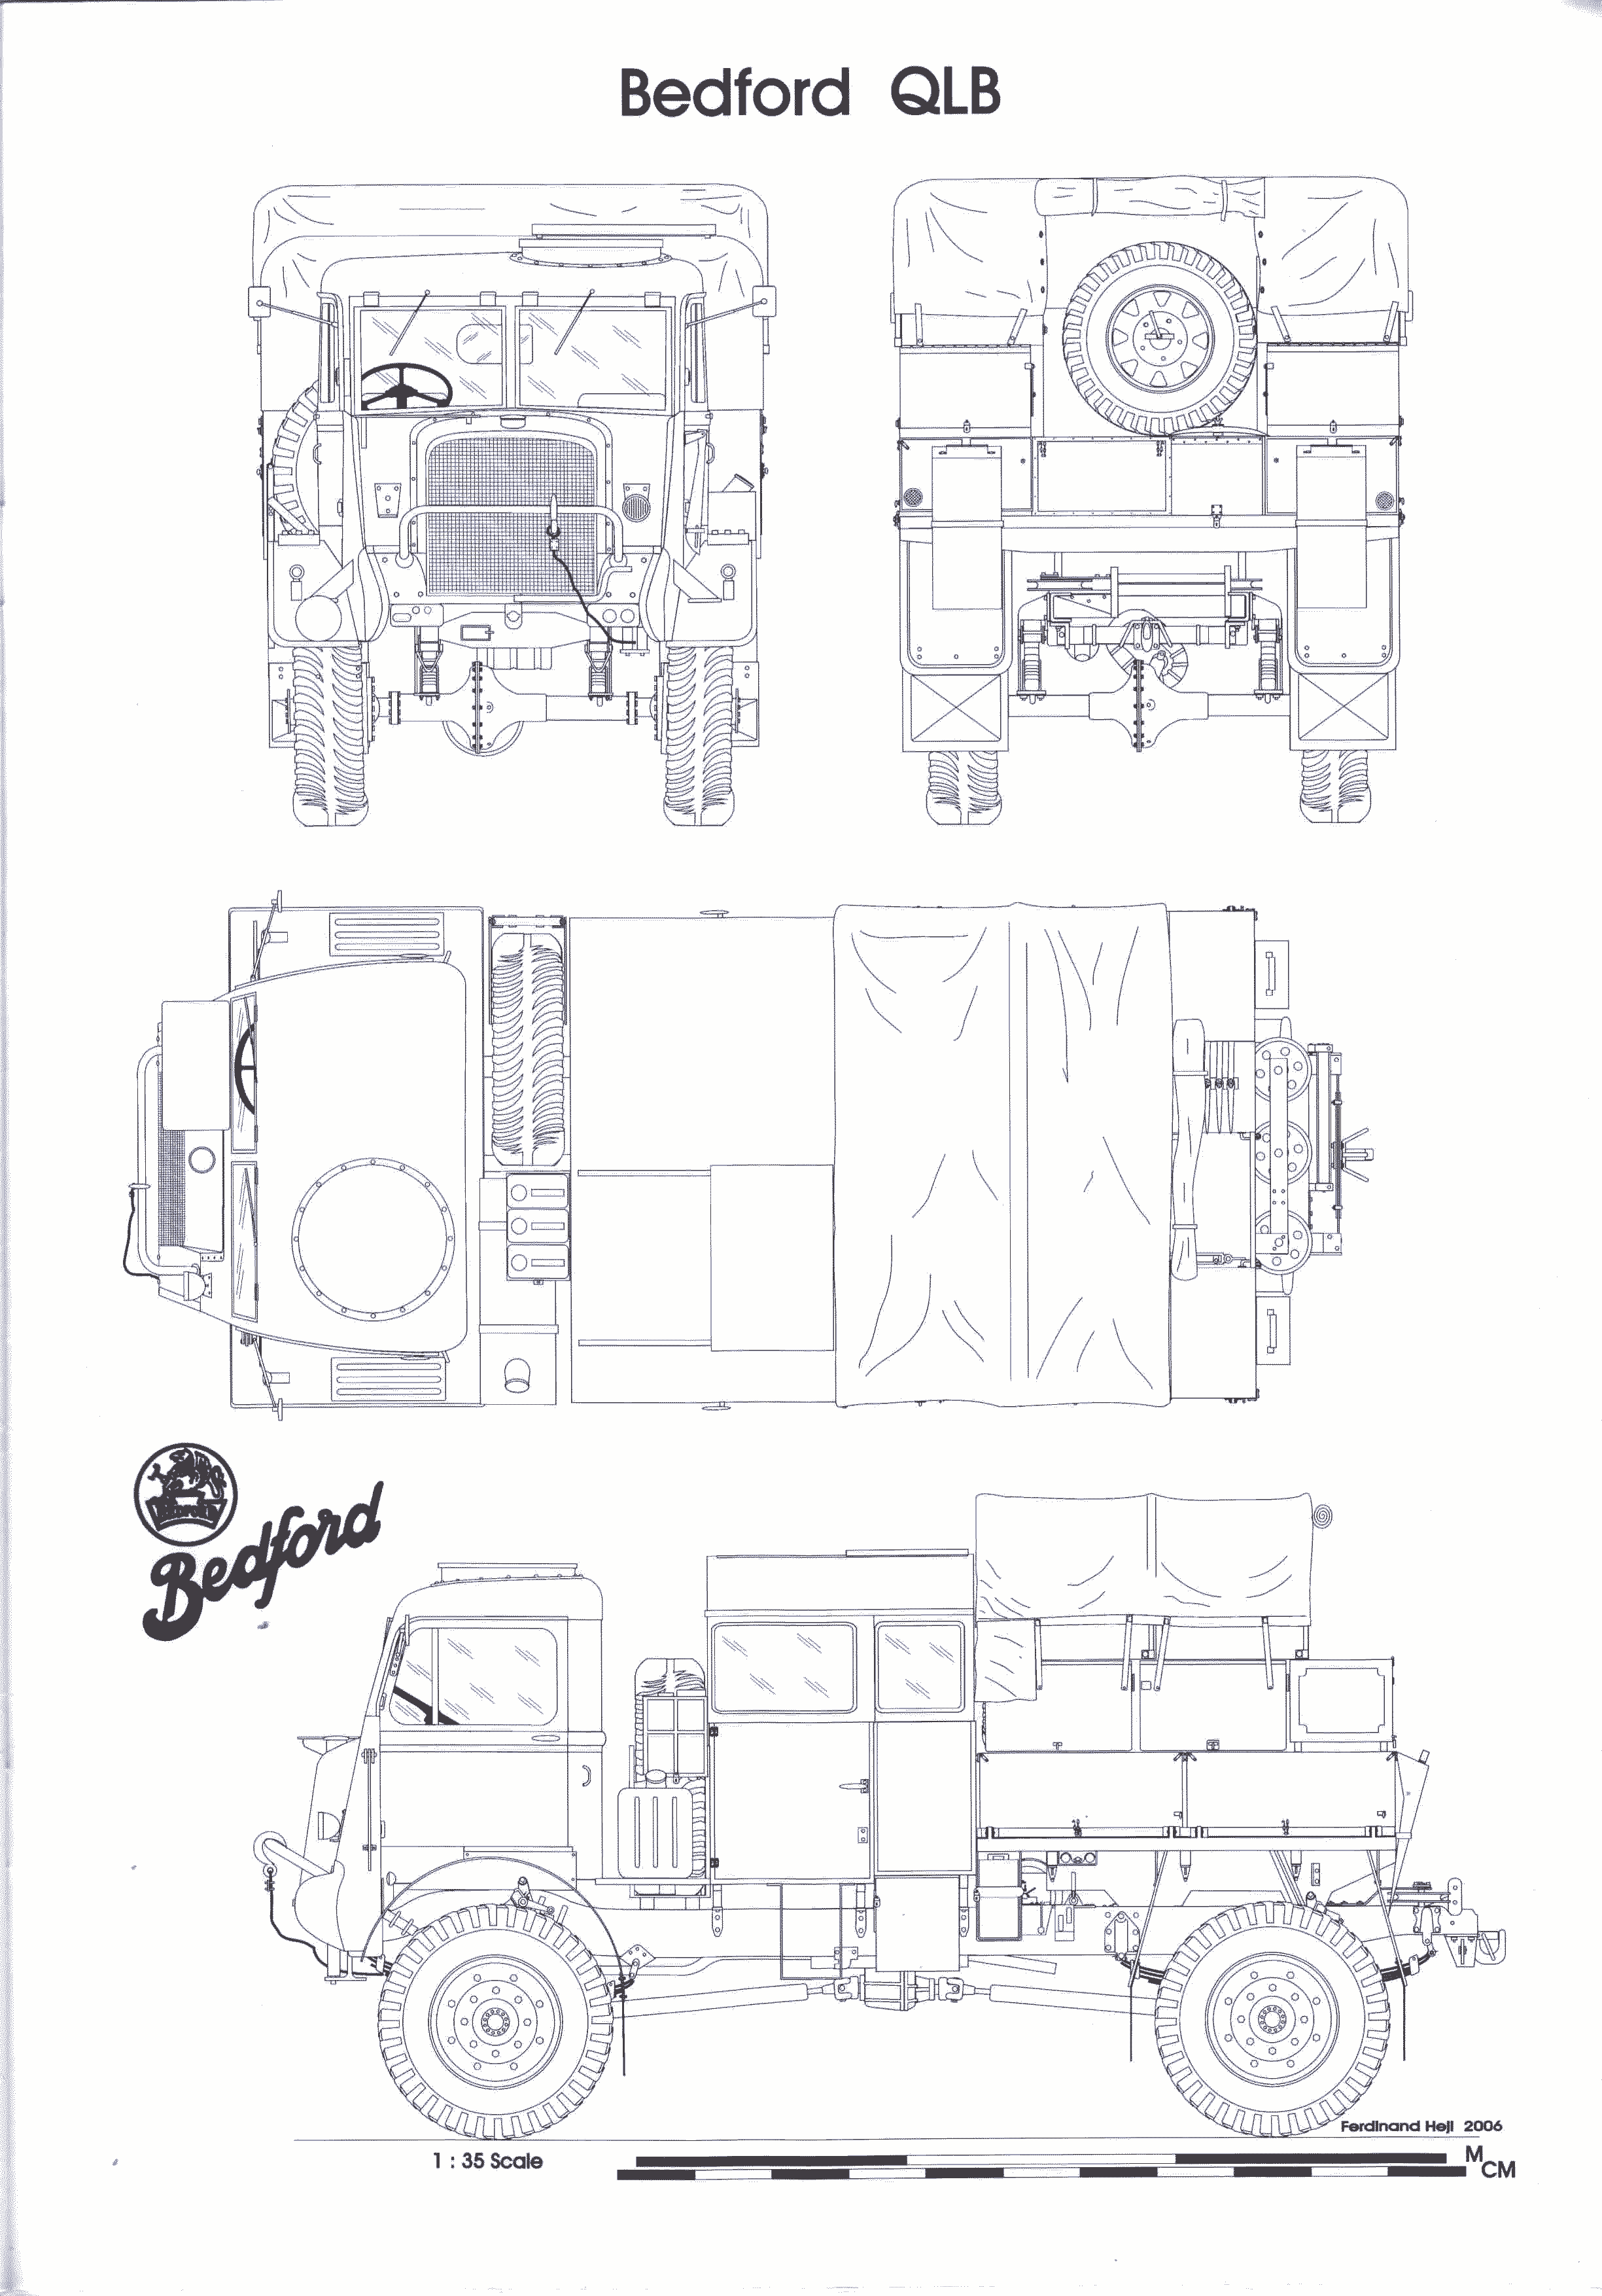 Bedford QL blueprint